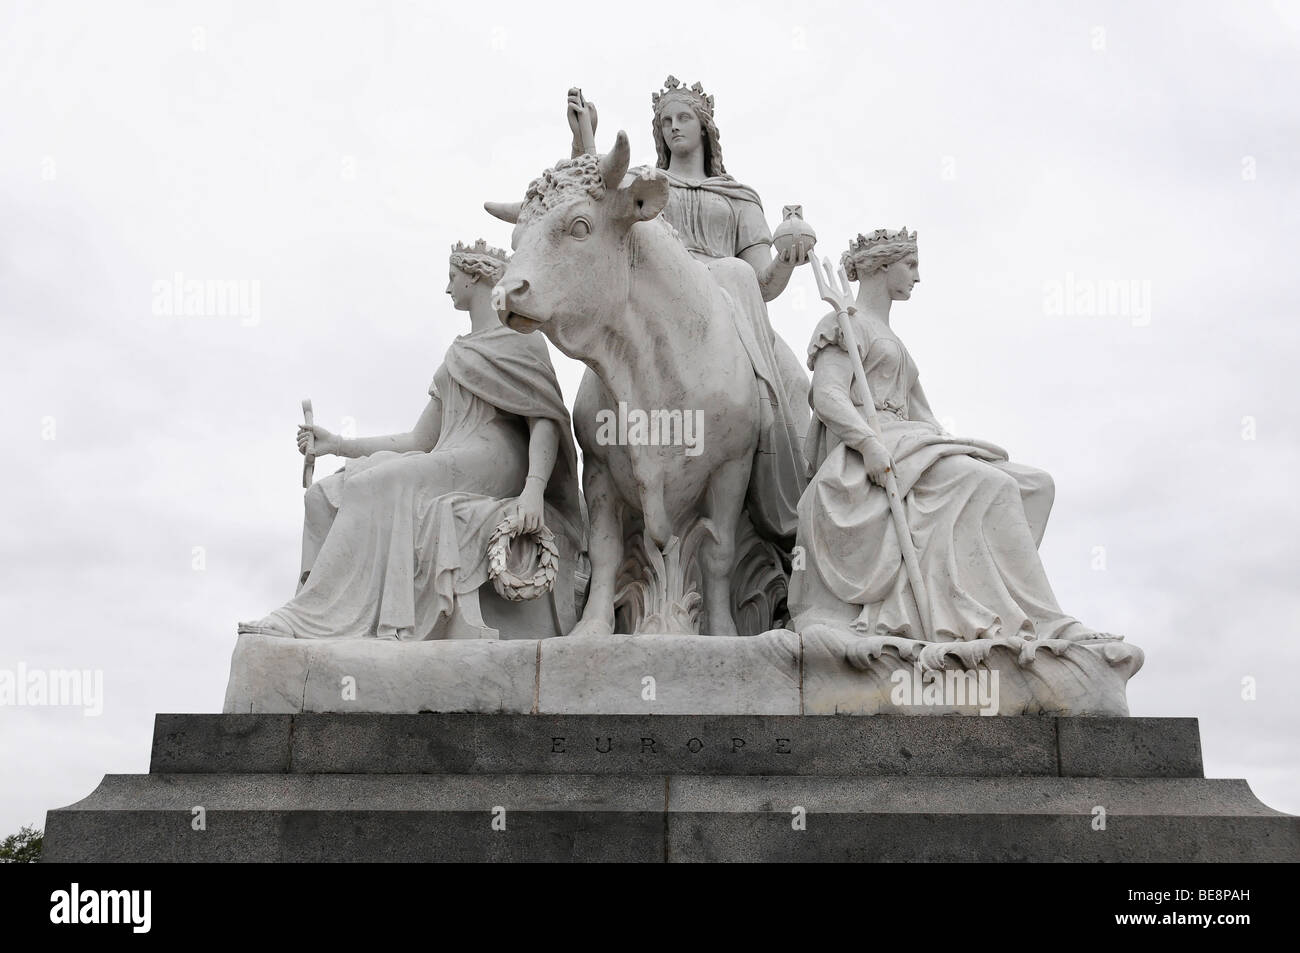 Dettaglio, figure sul monumento, Albert Memorial monumento, statua dorata vicino alla Royal Albert Hall di Londra, Inghilterra, Regno Ki Foto Stock